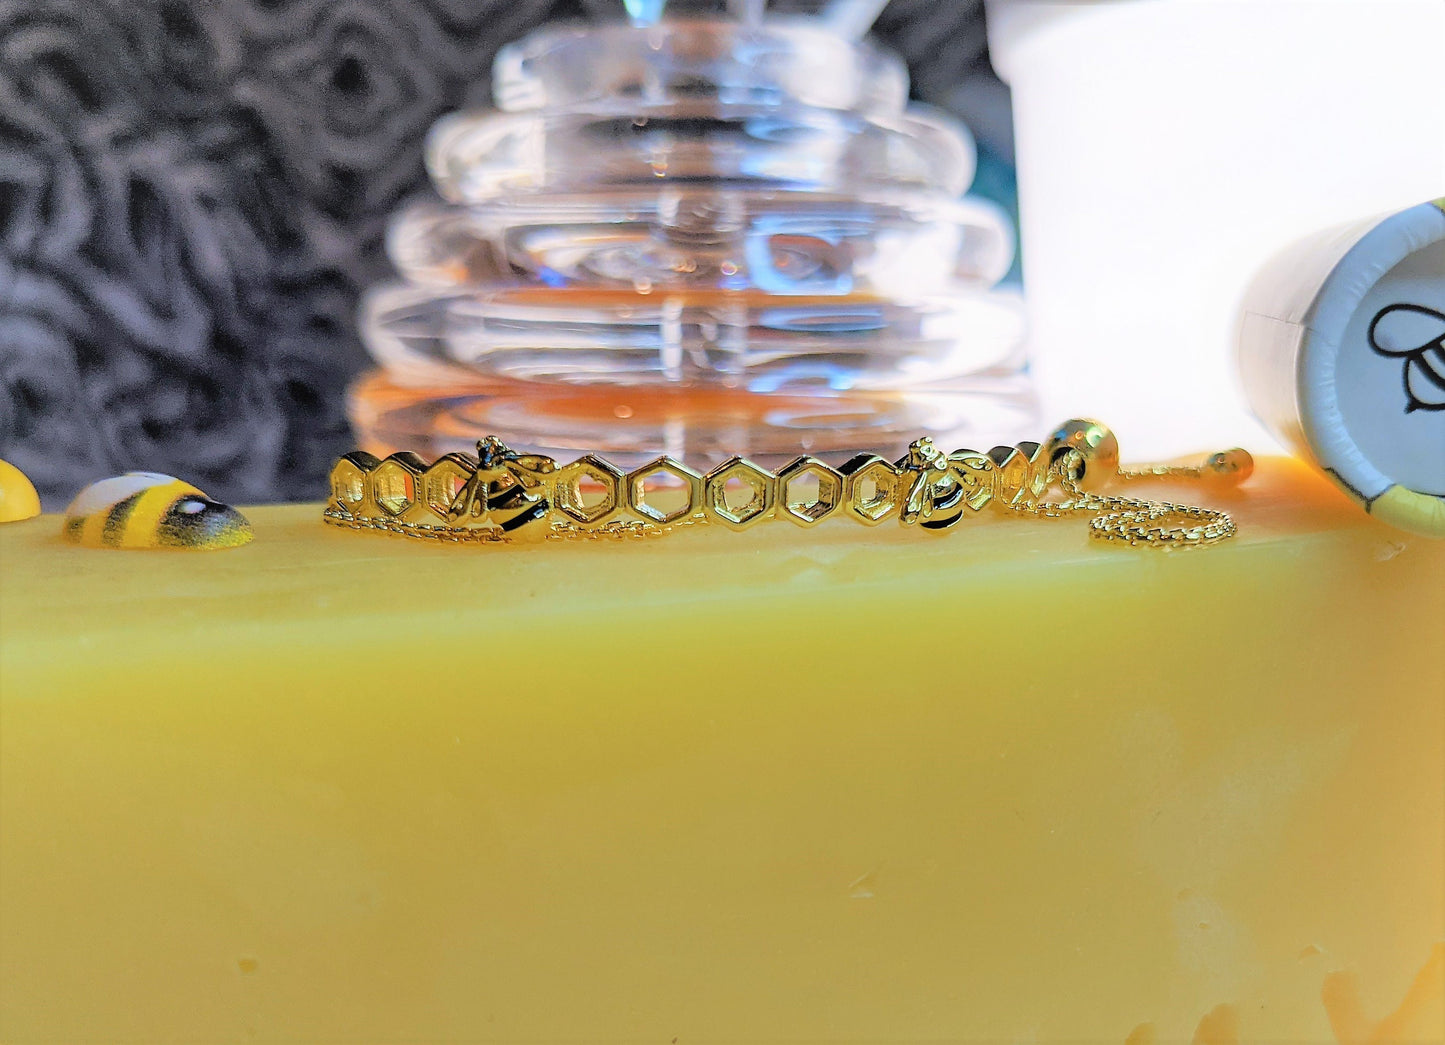 
                  
                    HoneyBee's Love Gold | Honeycomb 18K Golden Bracelet 
                  
                